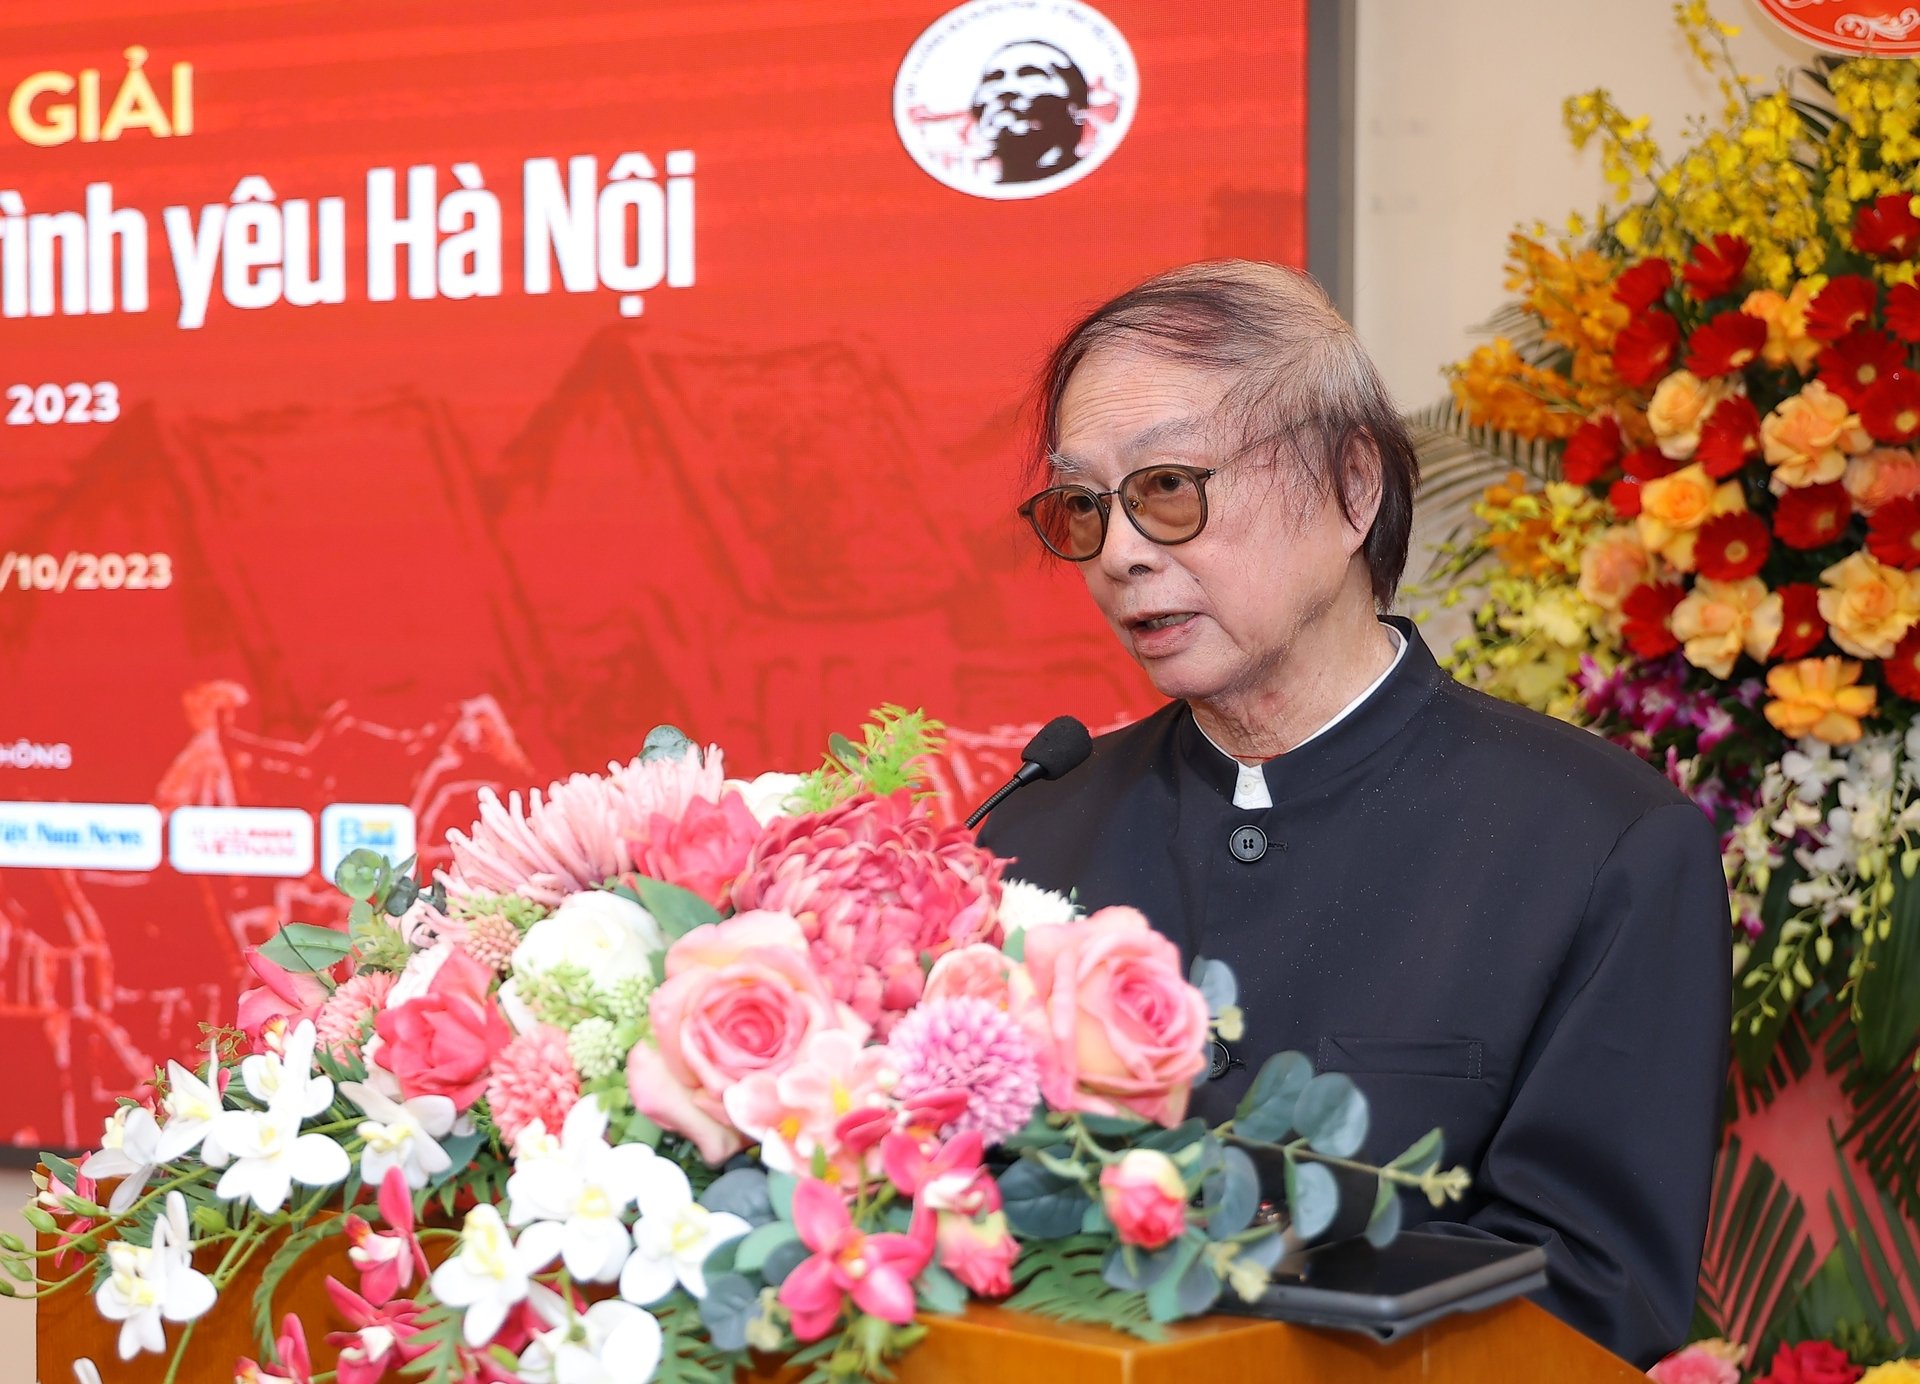 Đạo diễn Đặng Nhật Minh ở tuổi 85. Ảnh: Hòa Nguyễn.